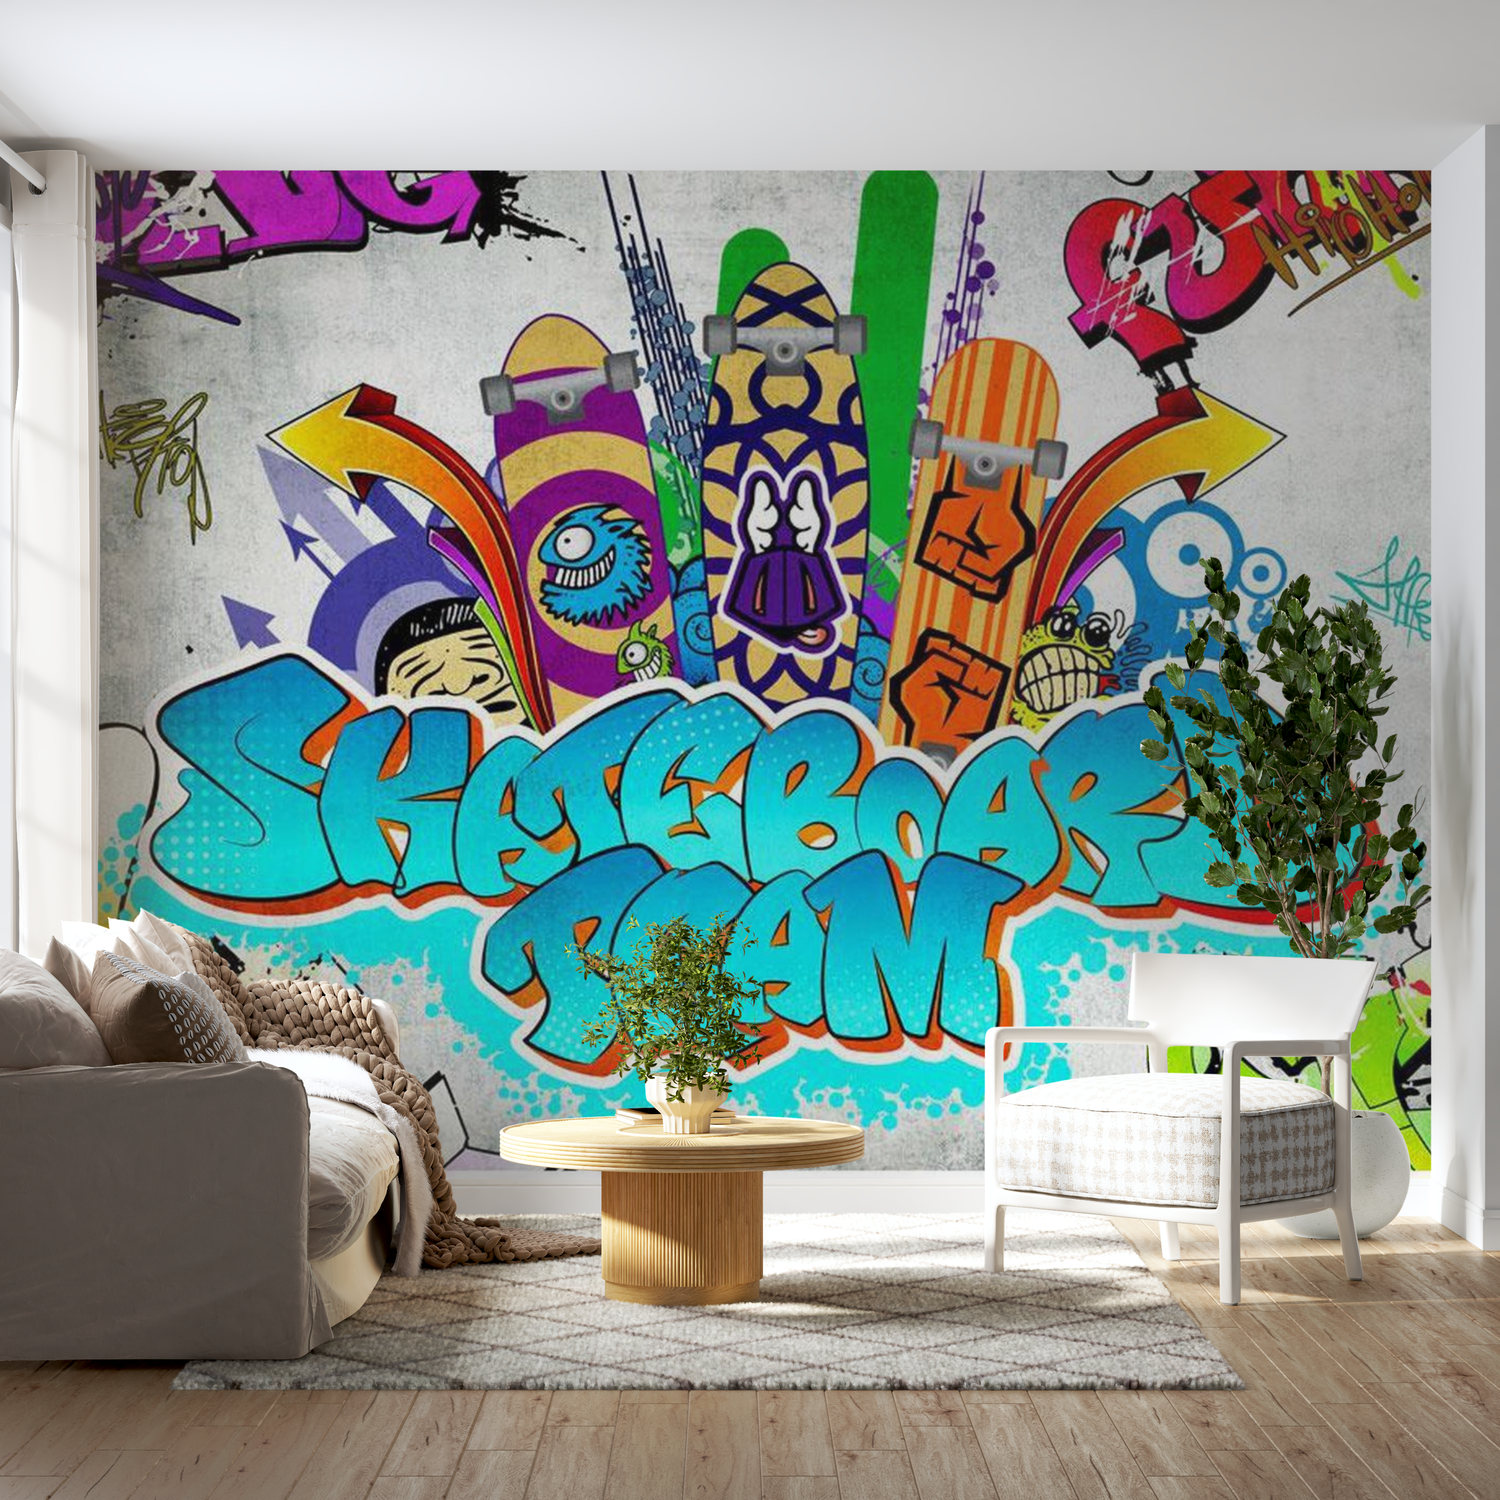 Street Art Wallpaper Wall Mural - Skateboard Team 39"Wx27"H